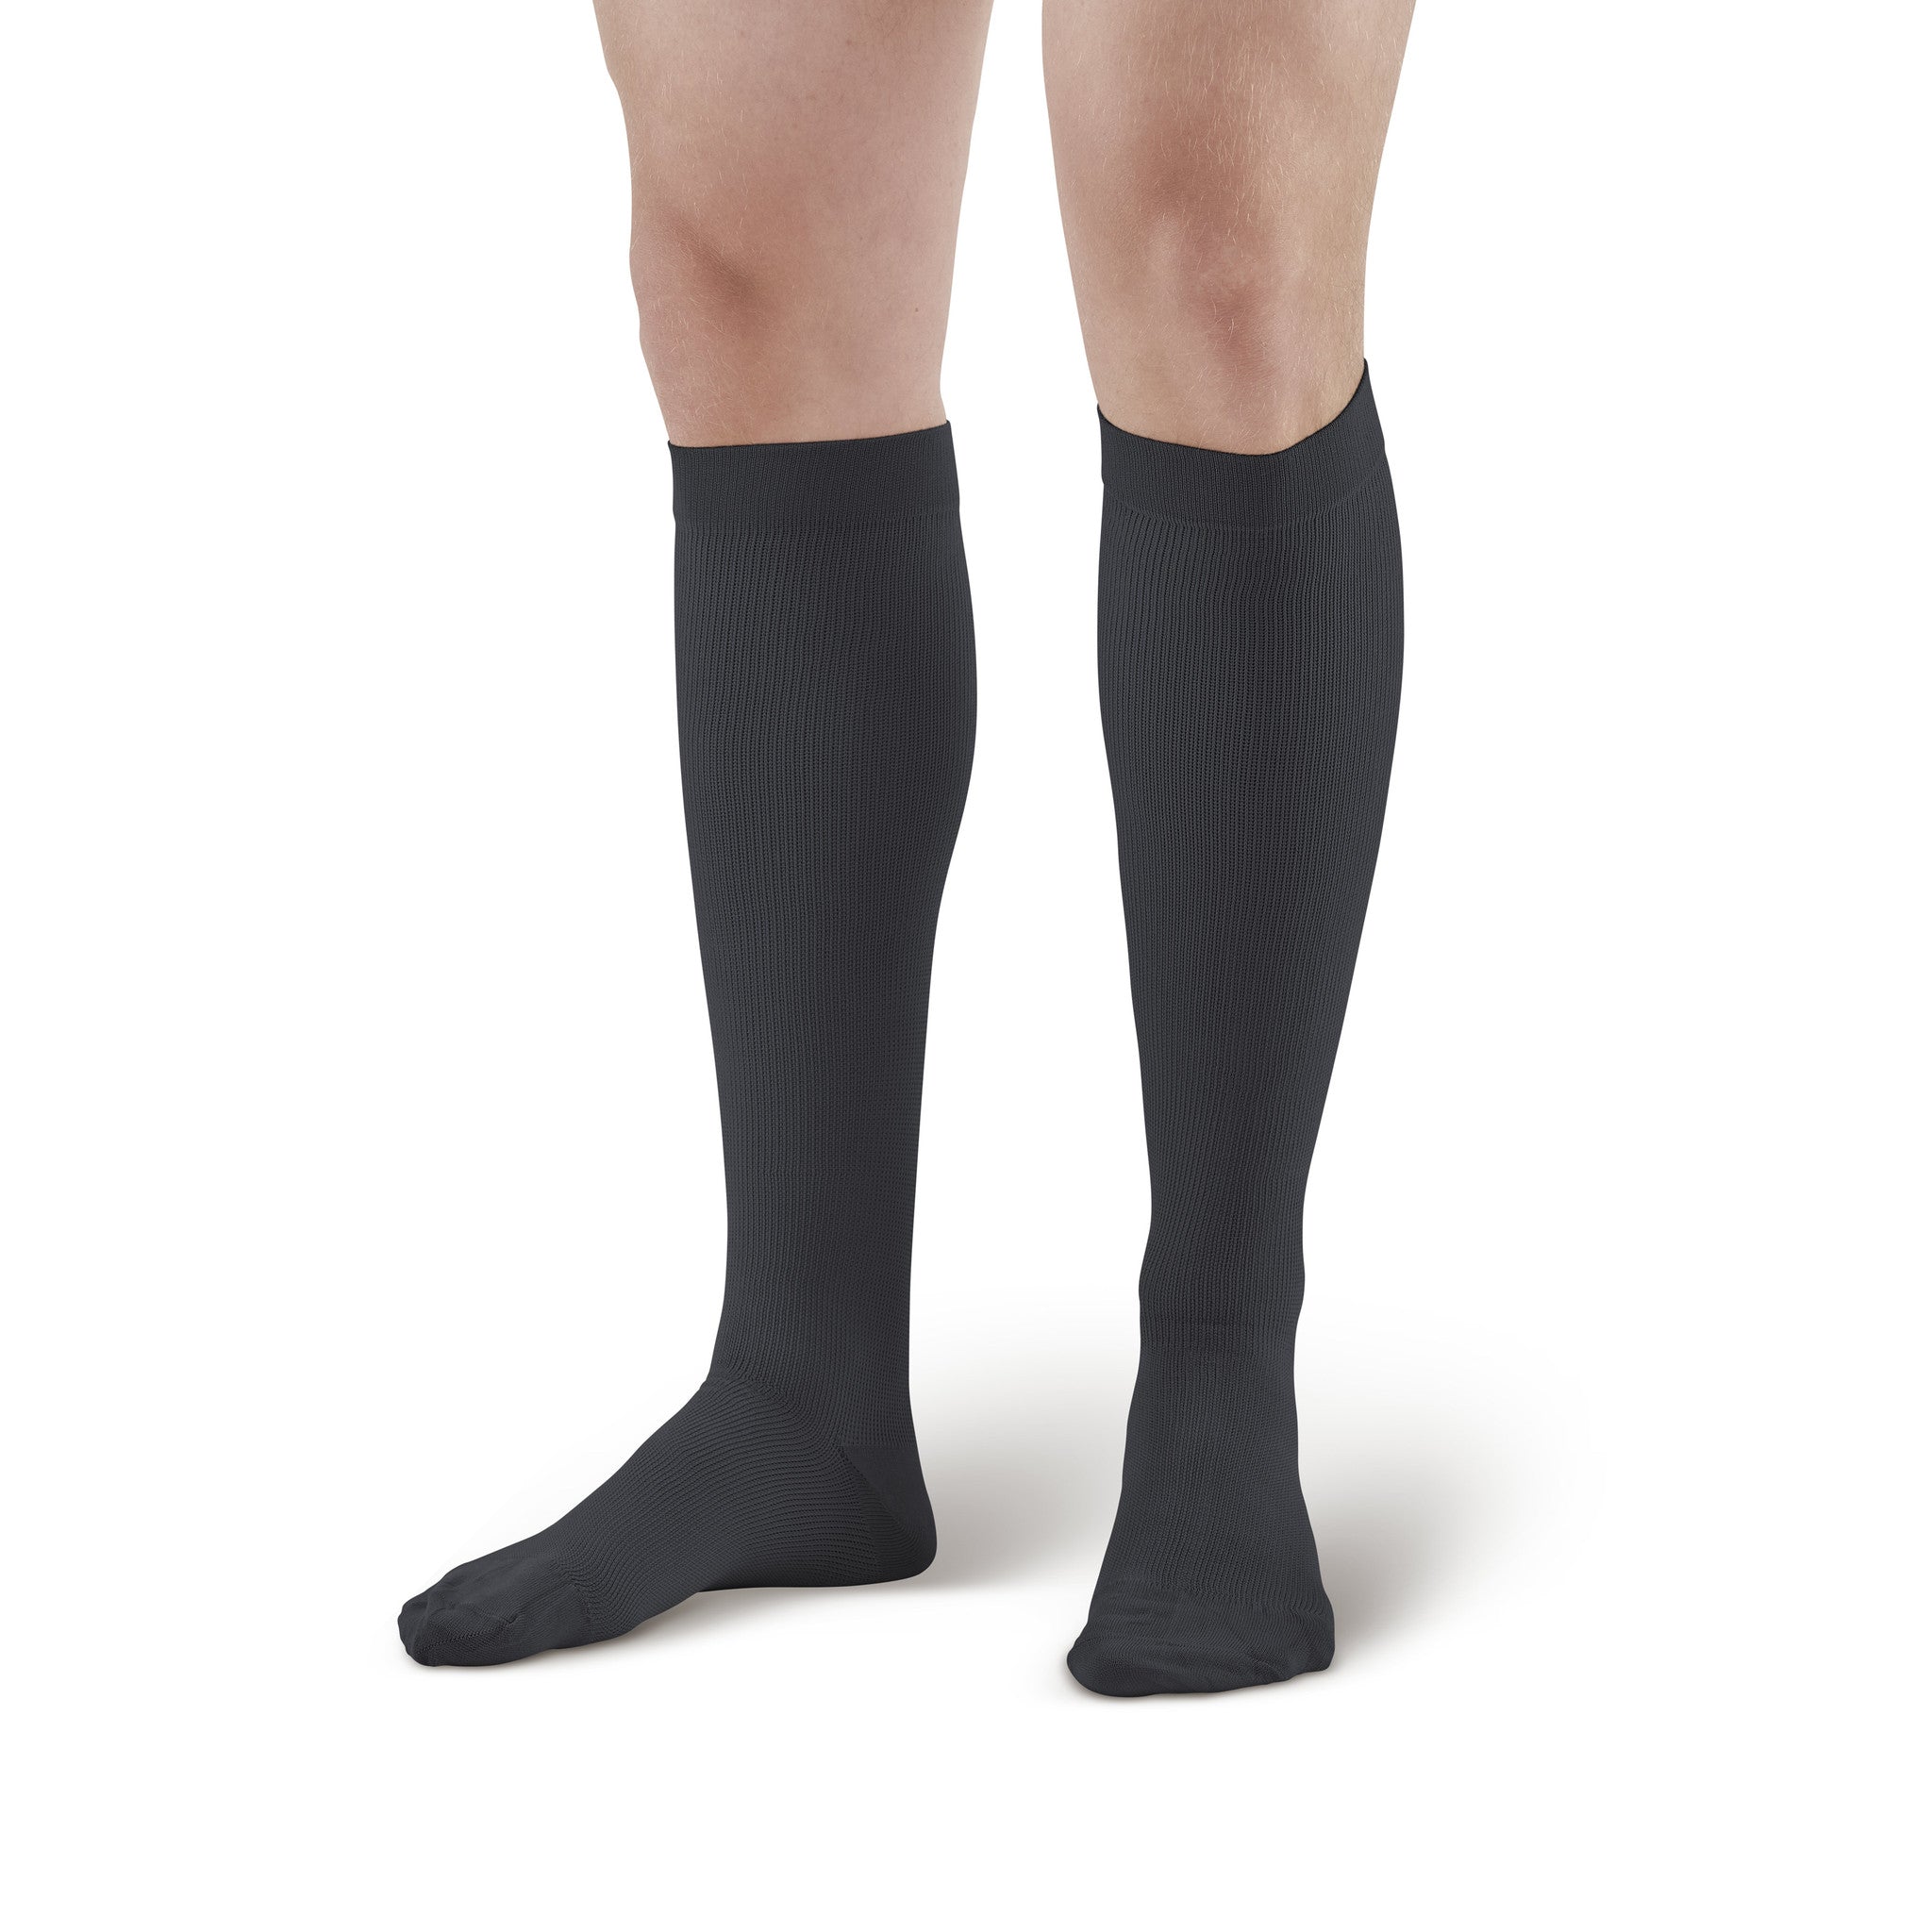 Truform Women's Stockings, Knee High, Sheer: 30-40 mmHg, Black, Large 